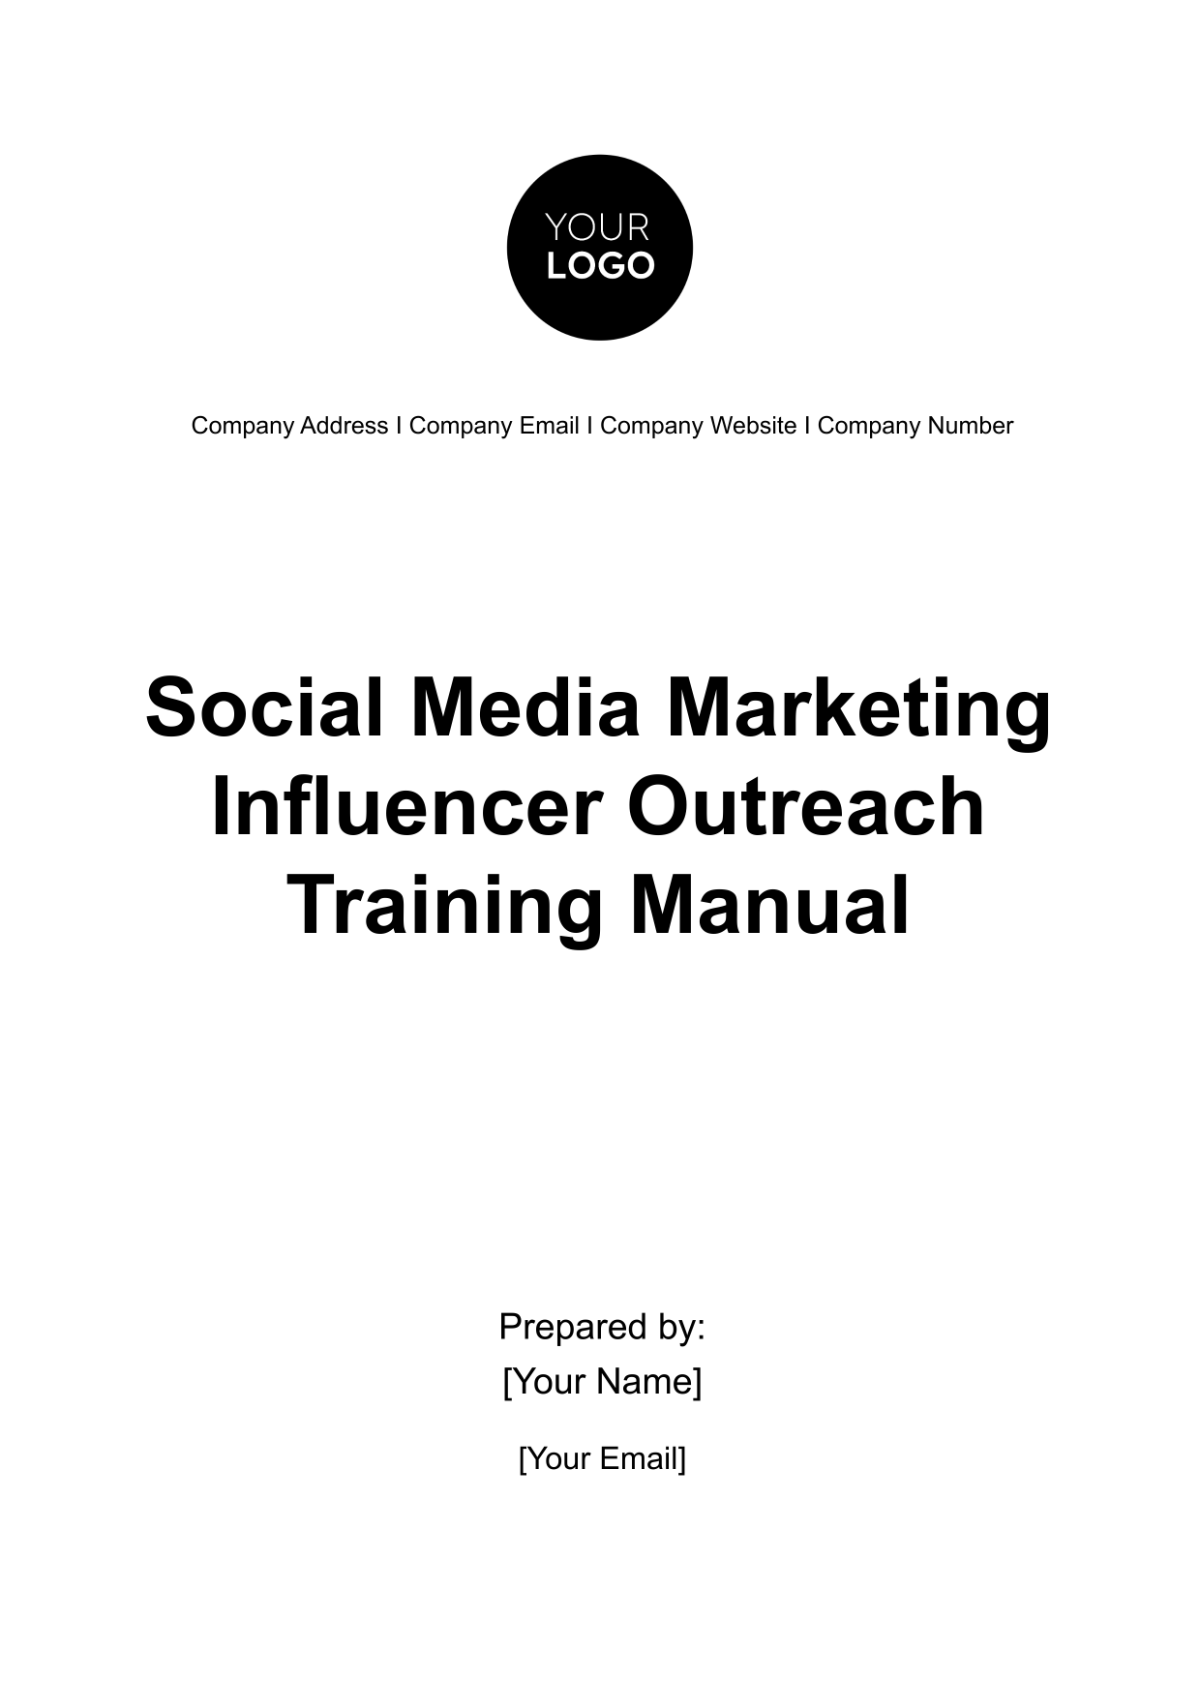 Social Media Marketing Influencer Outreach Training Manual Template